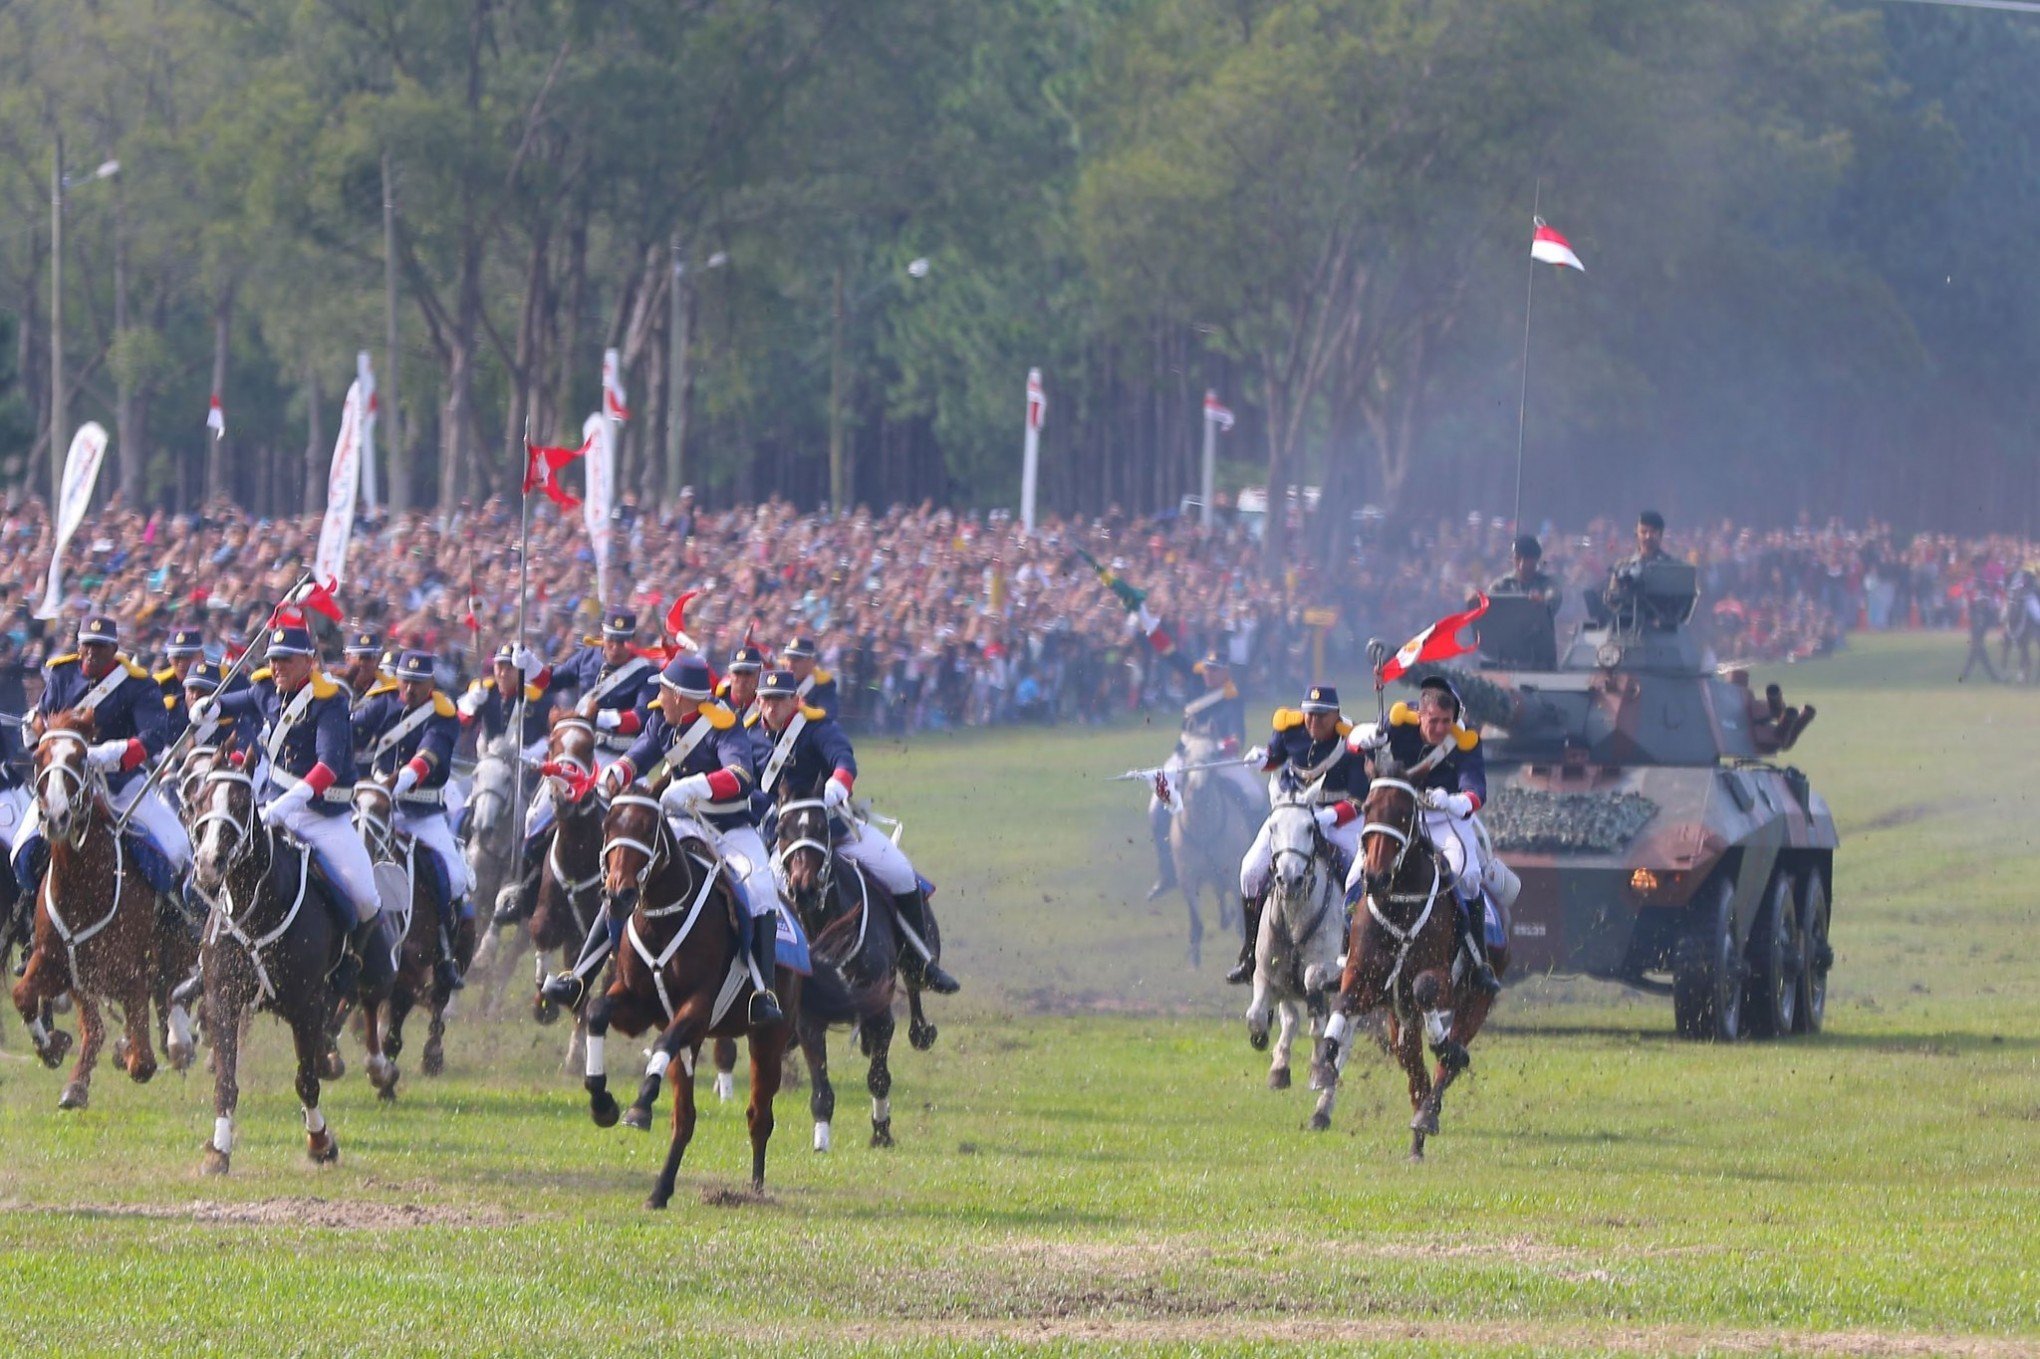 Cavalaria Blindada  Cavalaria, Exercito, Exercito brasileiro